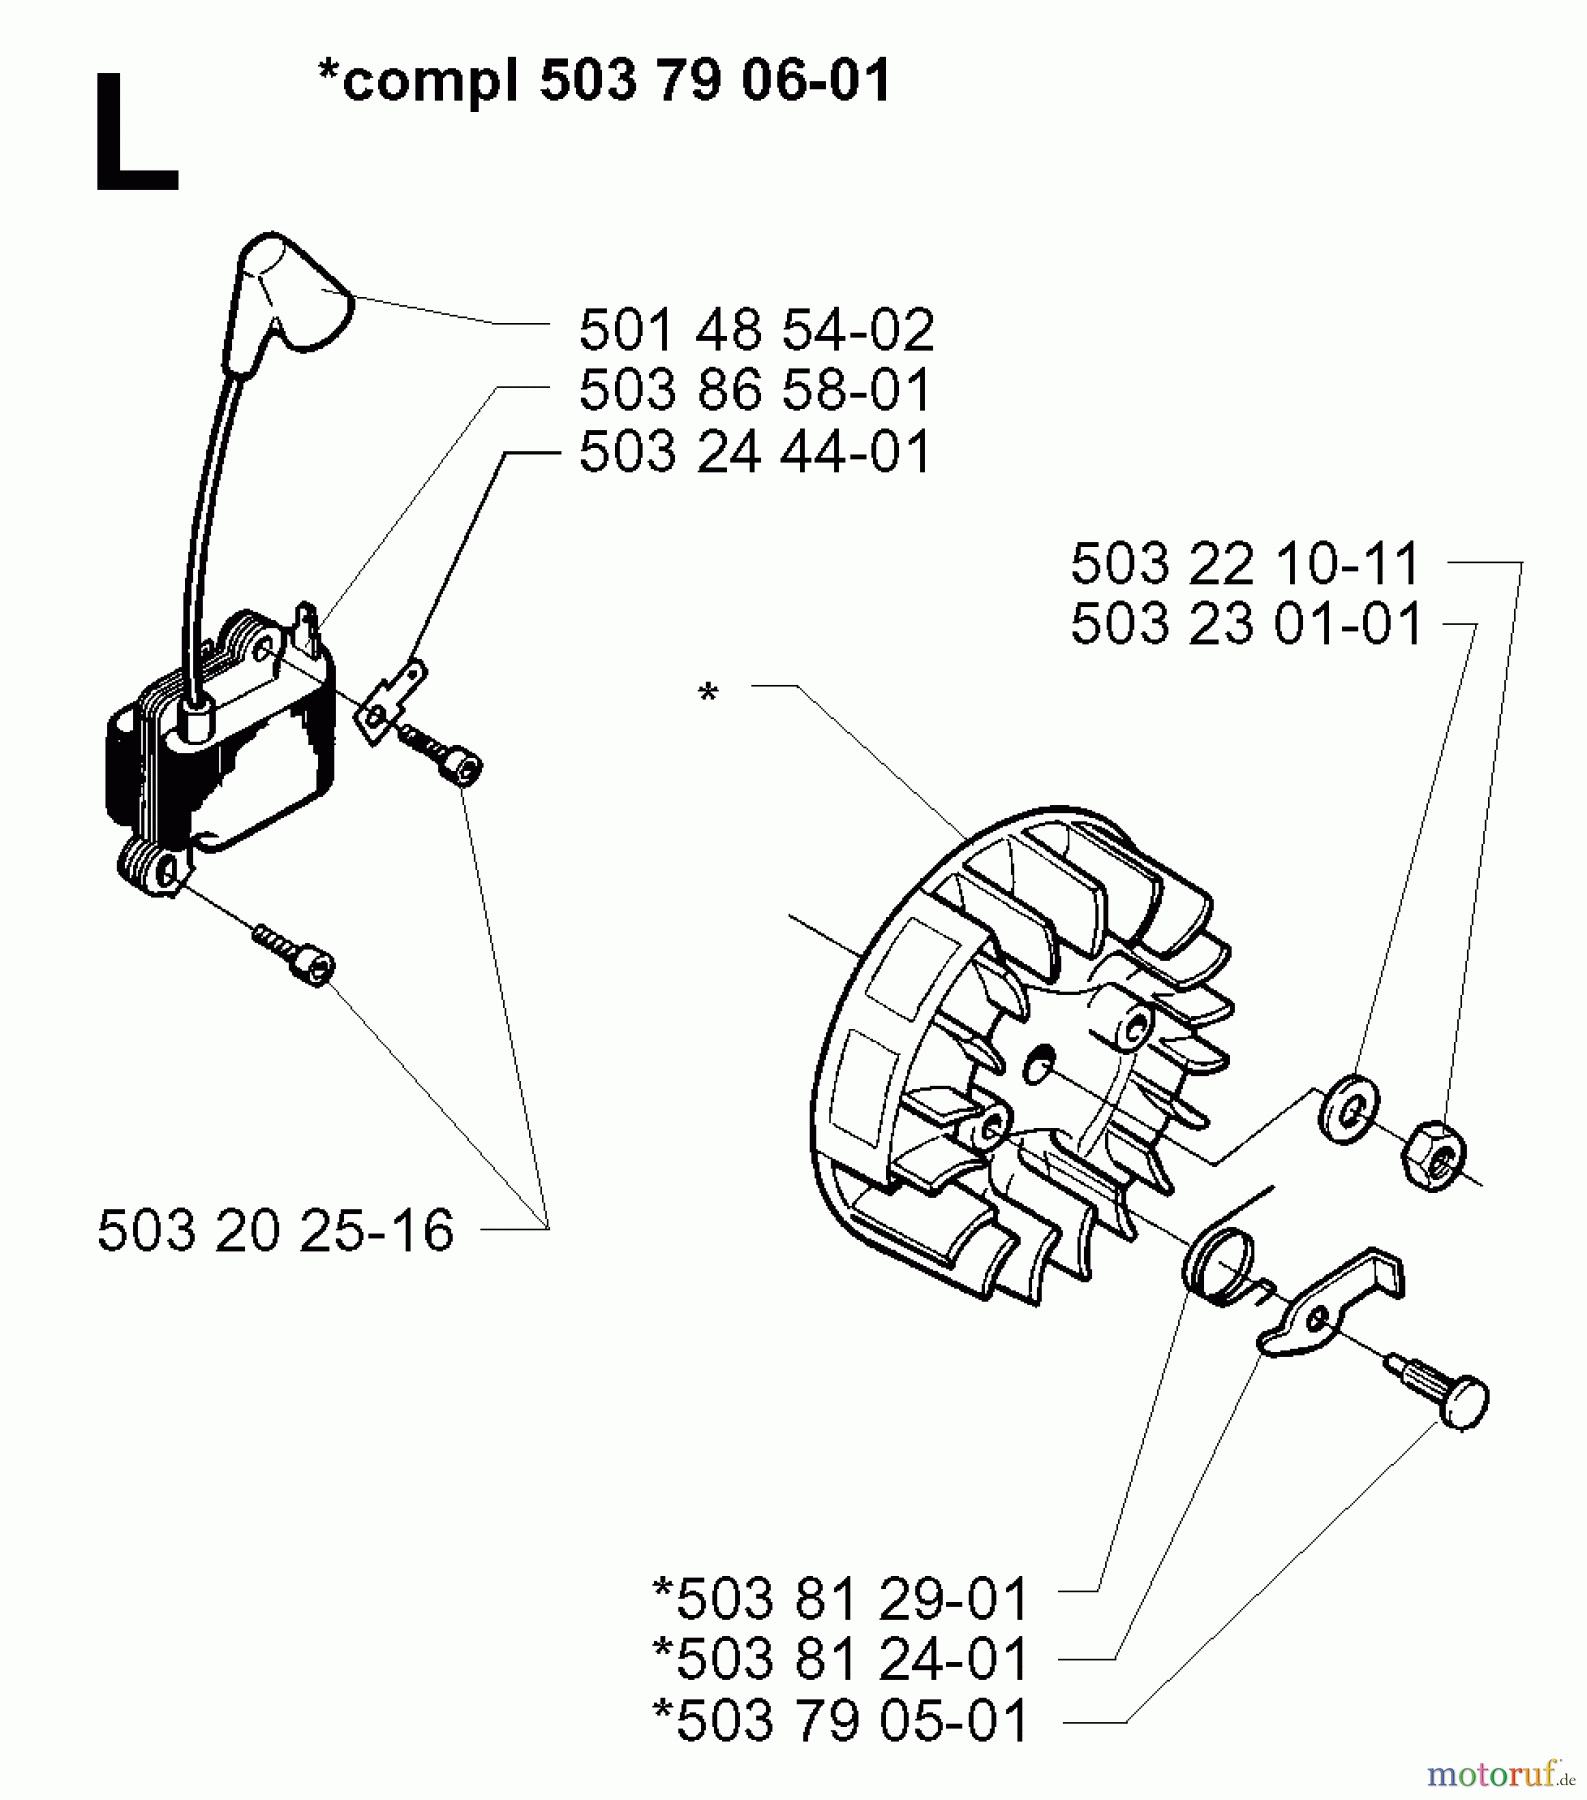  Jonsered Motorsensen, Trimmer GR2032 - Jonsered String/Brush Trimmer (1998-02) IGNITION SYSTEM